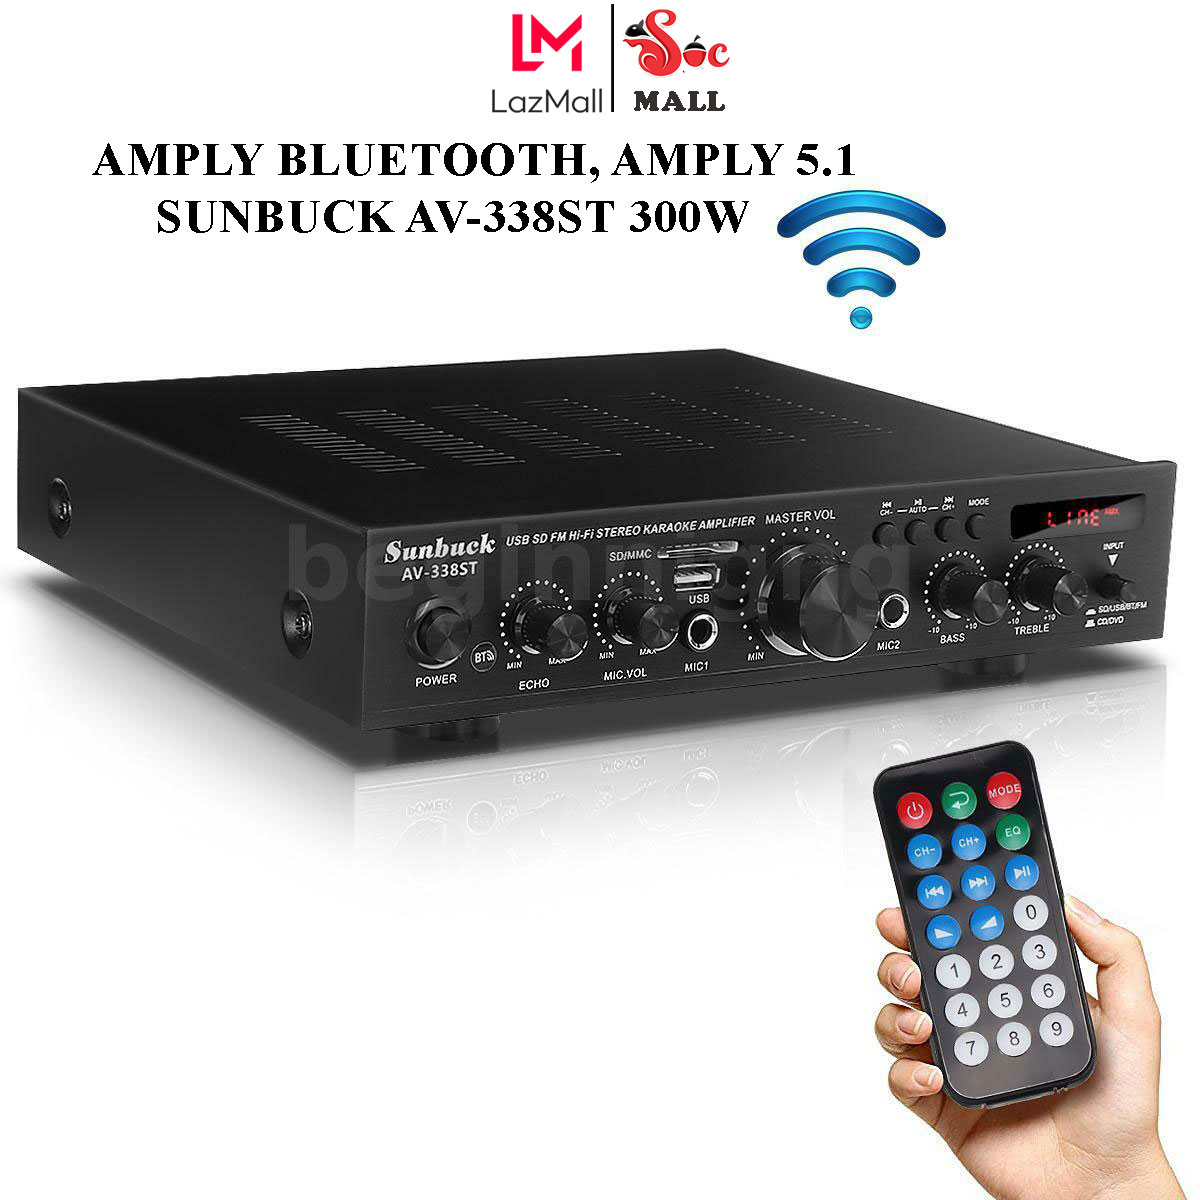 Amply 5.1, Ampli Mini Bluetooth, Amply công suất lớn Sunbuck AV-338ST 300W, 5 kênh, kết nối bluetooth, hỗ trợ 2 micro, đầu vào AUX. Bảo hành 12 tháng